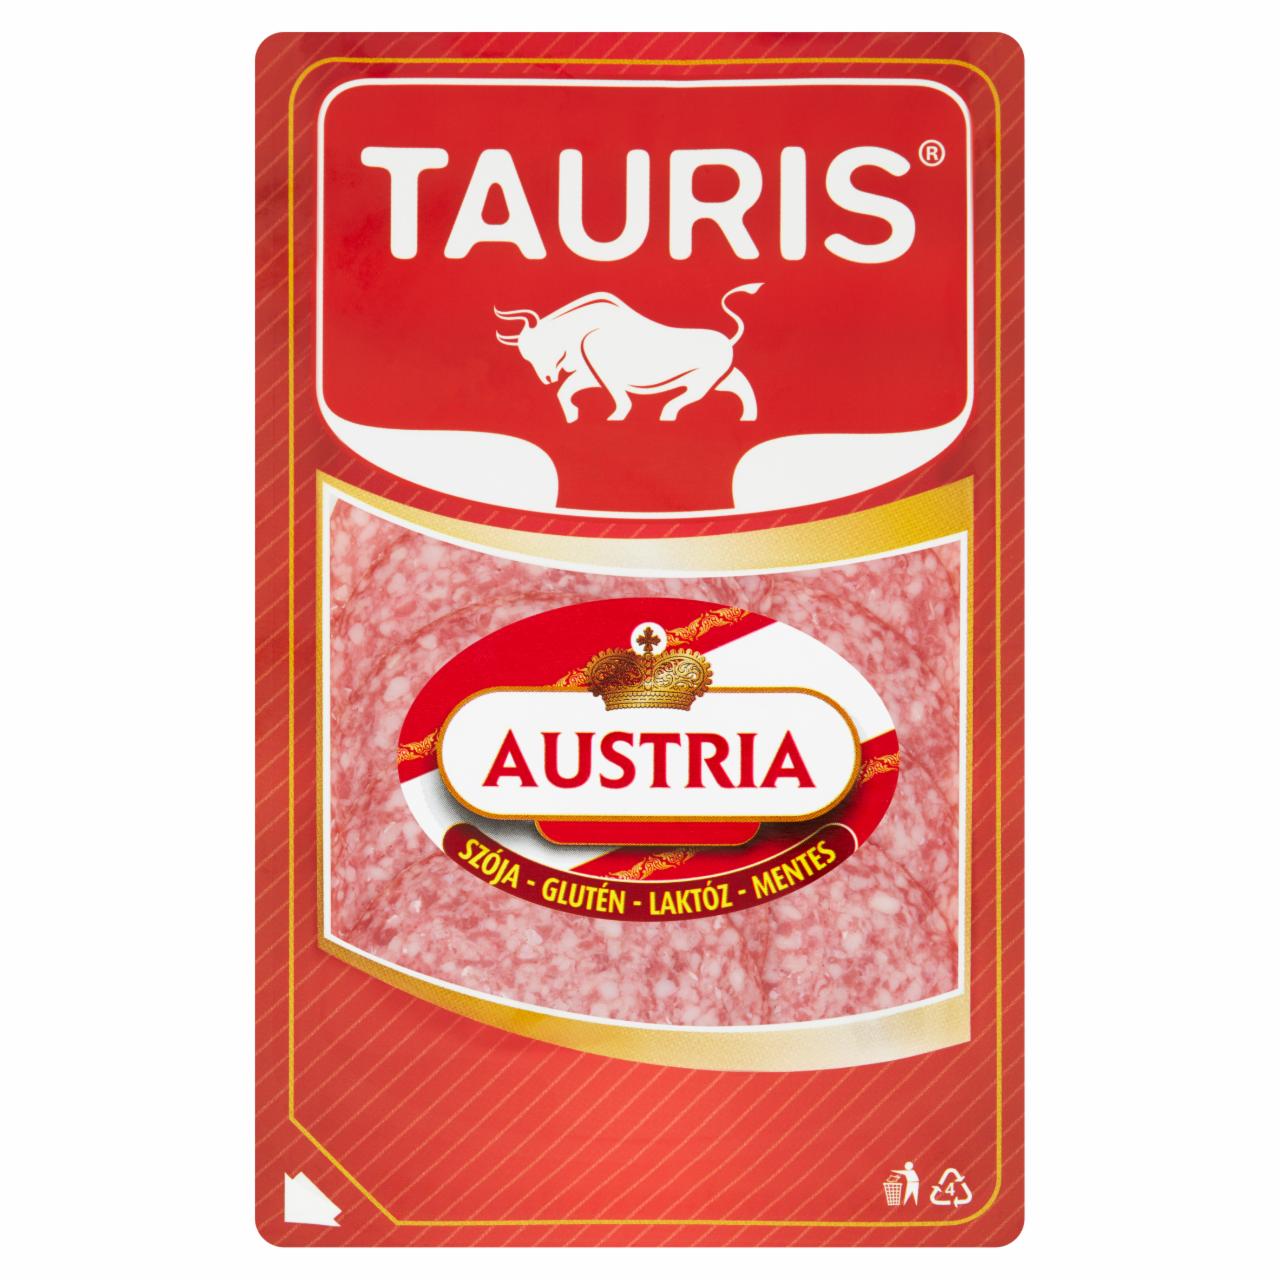 Képek - Tauris Austria húskészítmény 55 g